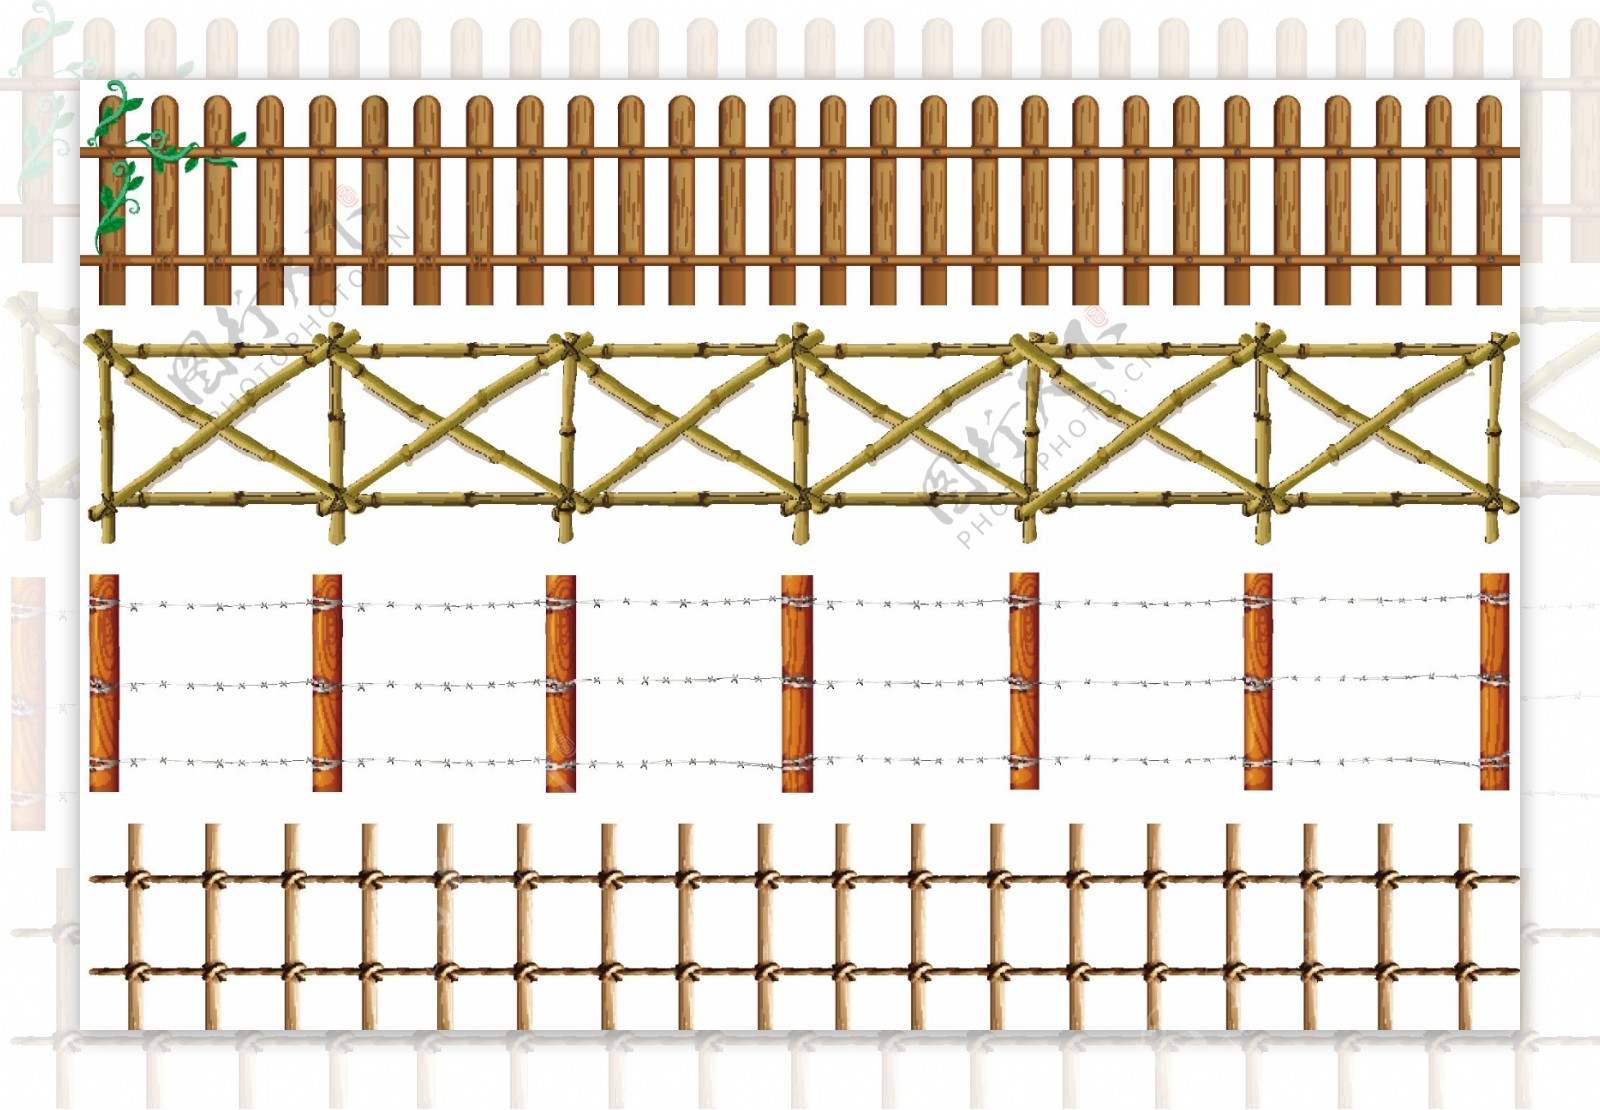 四个木栅栏设计插图矢量素材